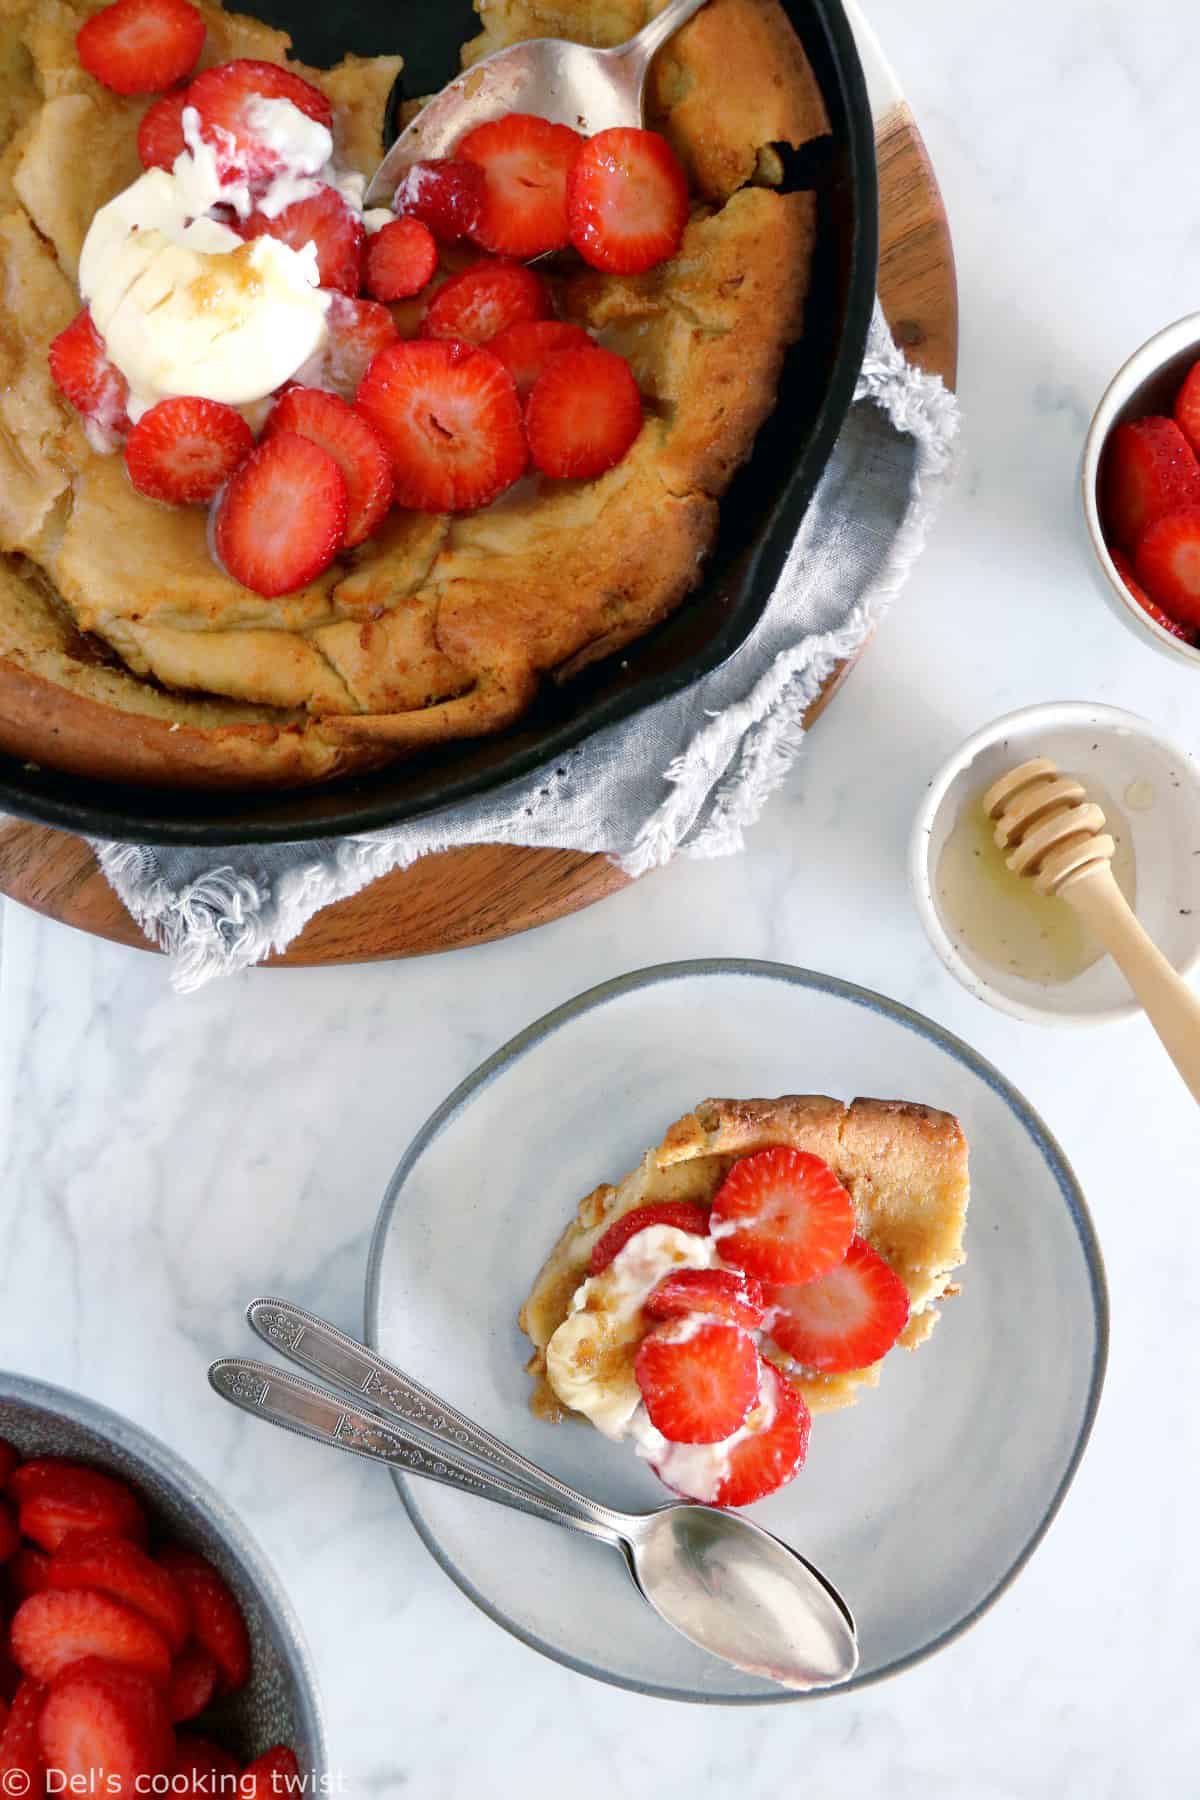 Les amoureux de pancakes vont adorer ce Dutch baby pancake au beurre noisette et aux fraises.